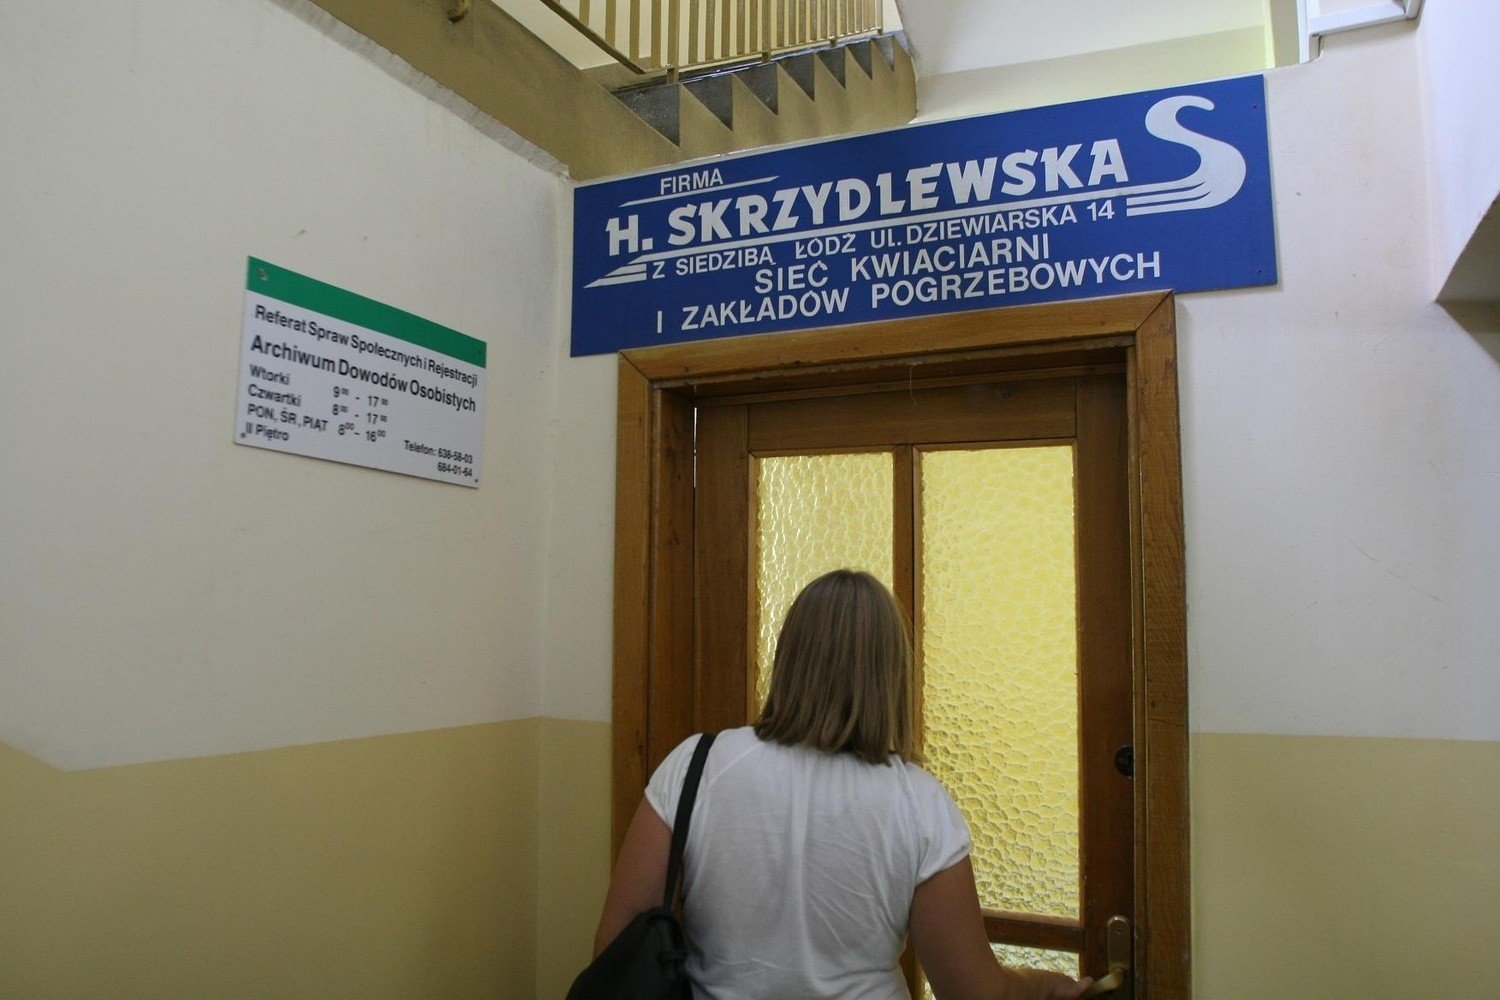 Łódź: firma H. Skrzydlewska ma monopol na urzędy | Dziennik Łódzki